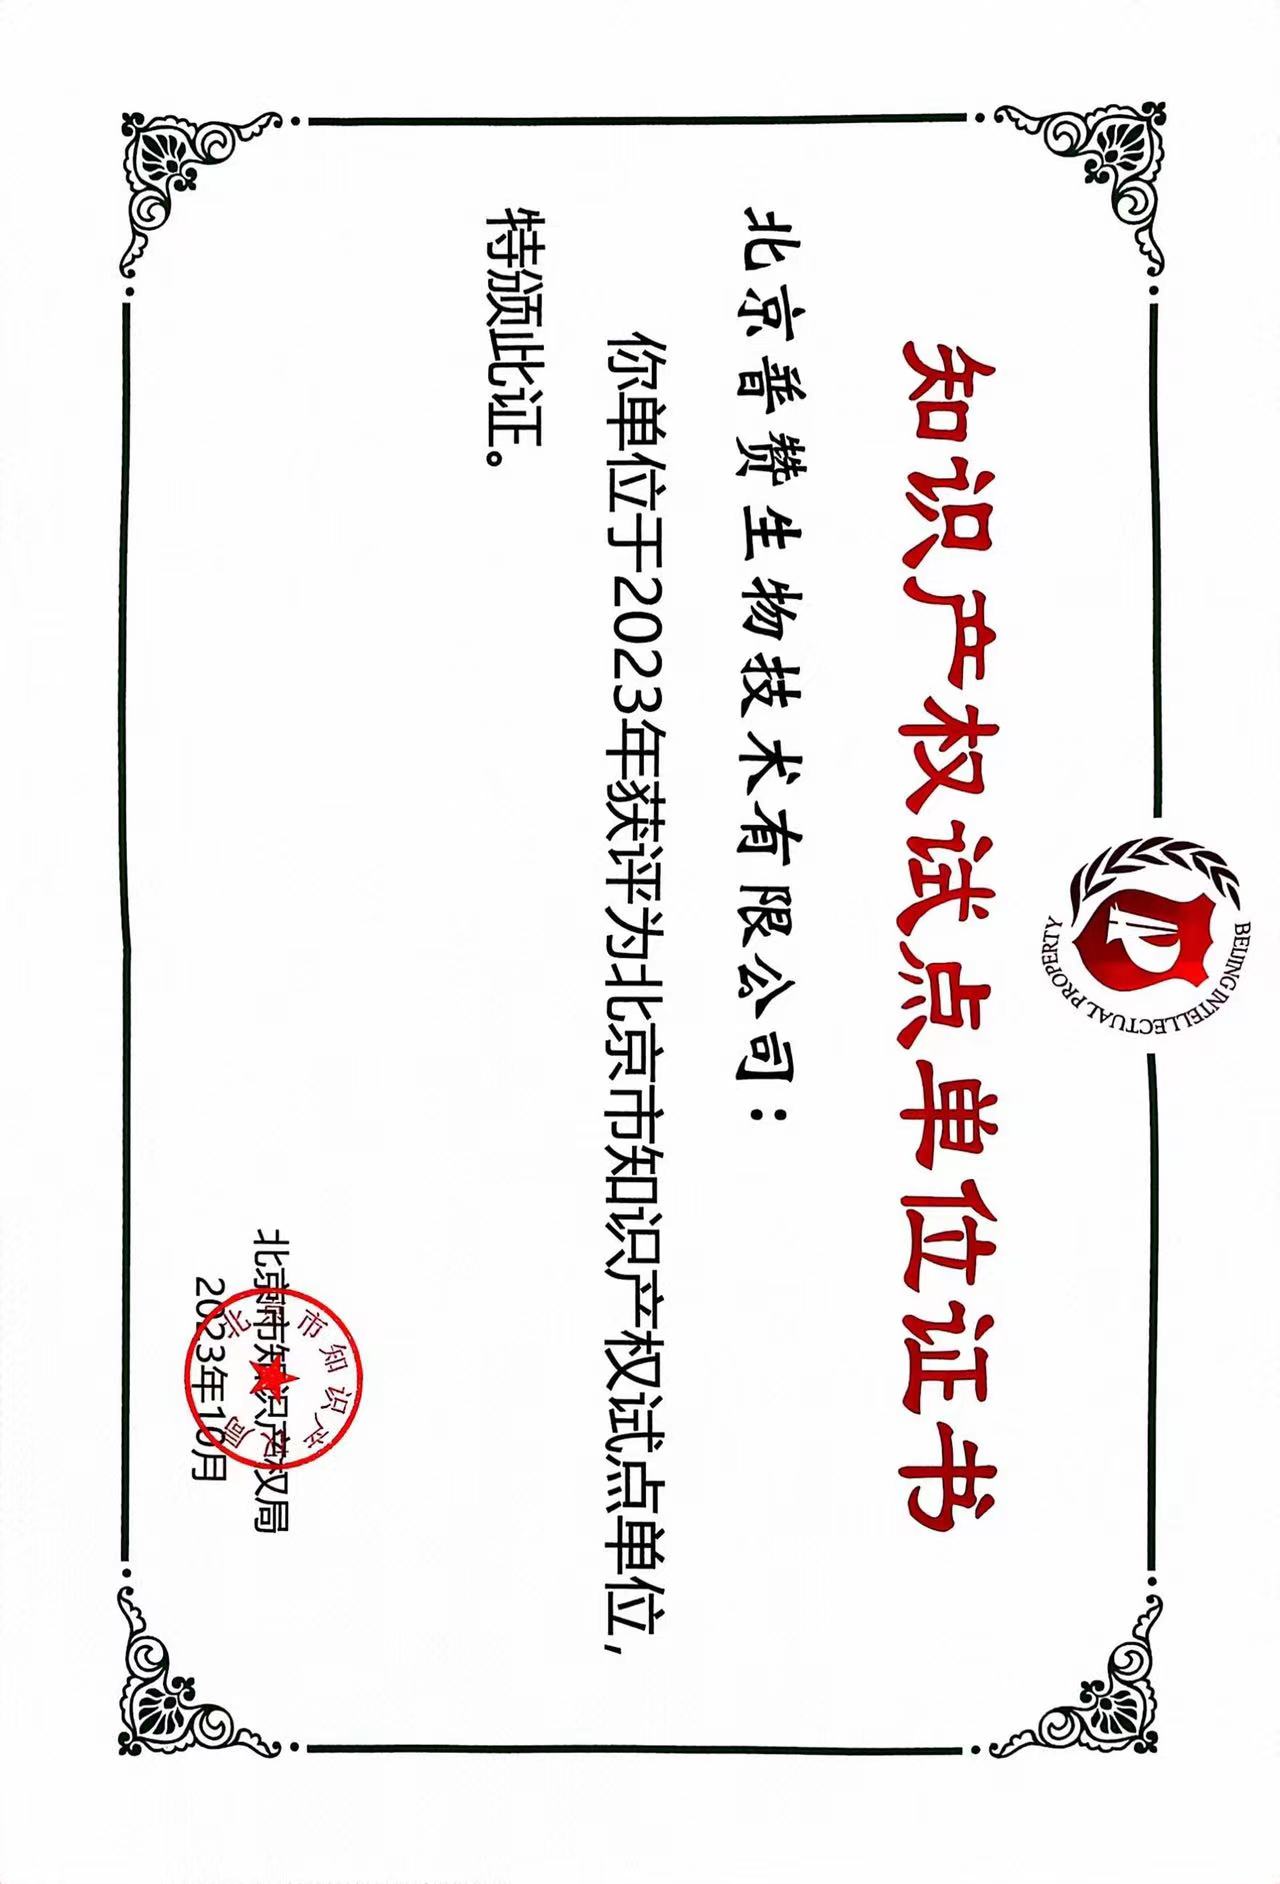 普赞生物荣获北京市知识产权试点单位证书